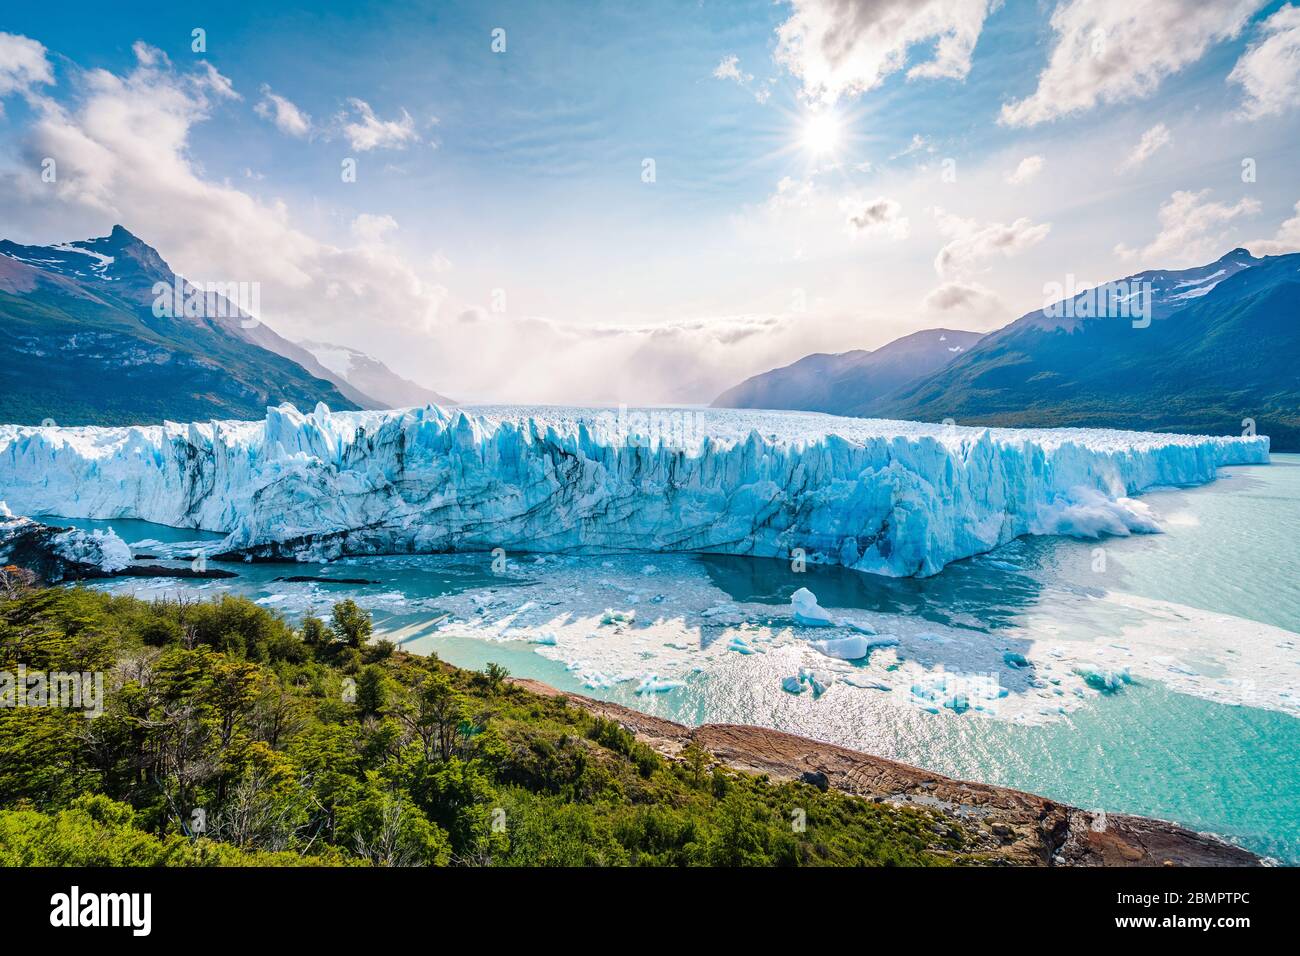 Glace s'écrasée dans l'eau au glacier Perito Moreno dans le parc national de Los Glaciares près d'El Calafate, Patagonia Argentine, Amérique du Sud. Banque D'Images